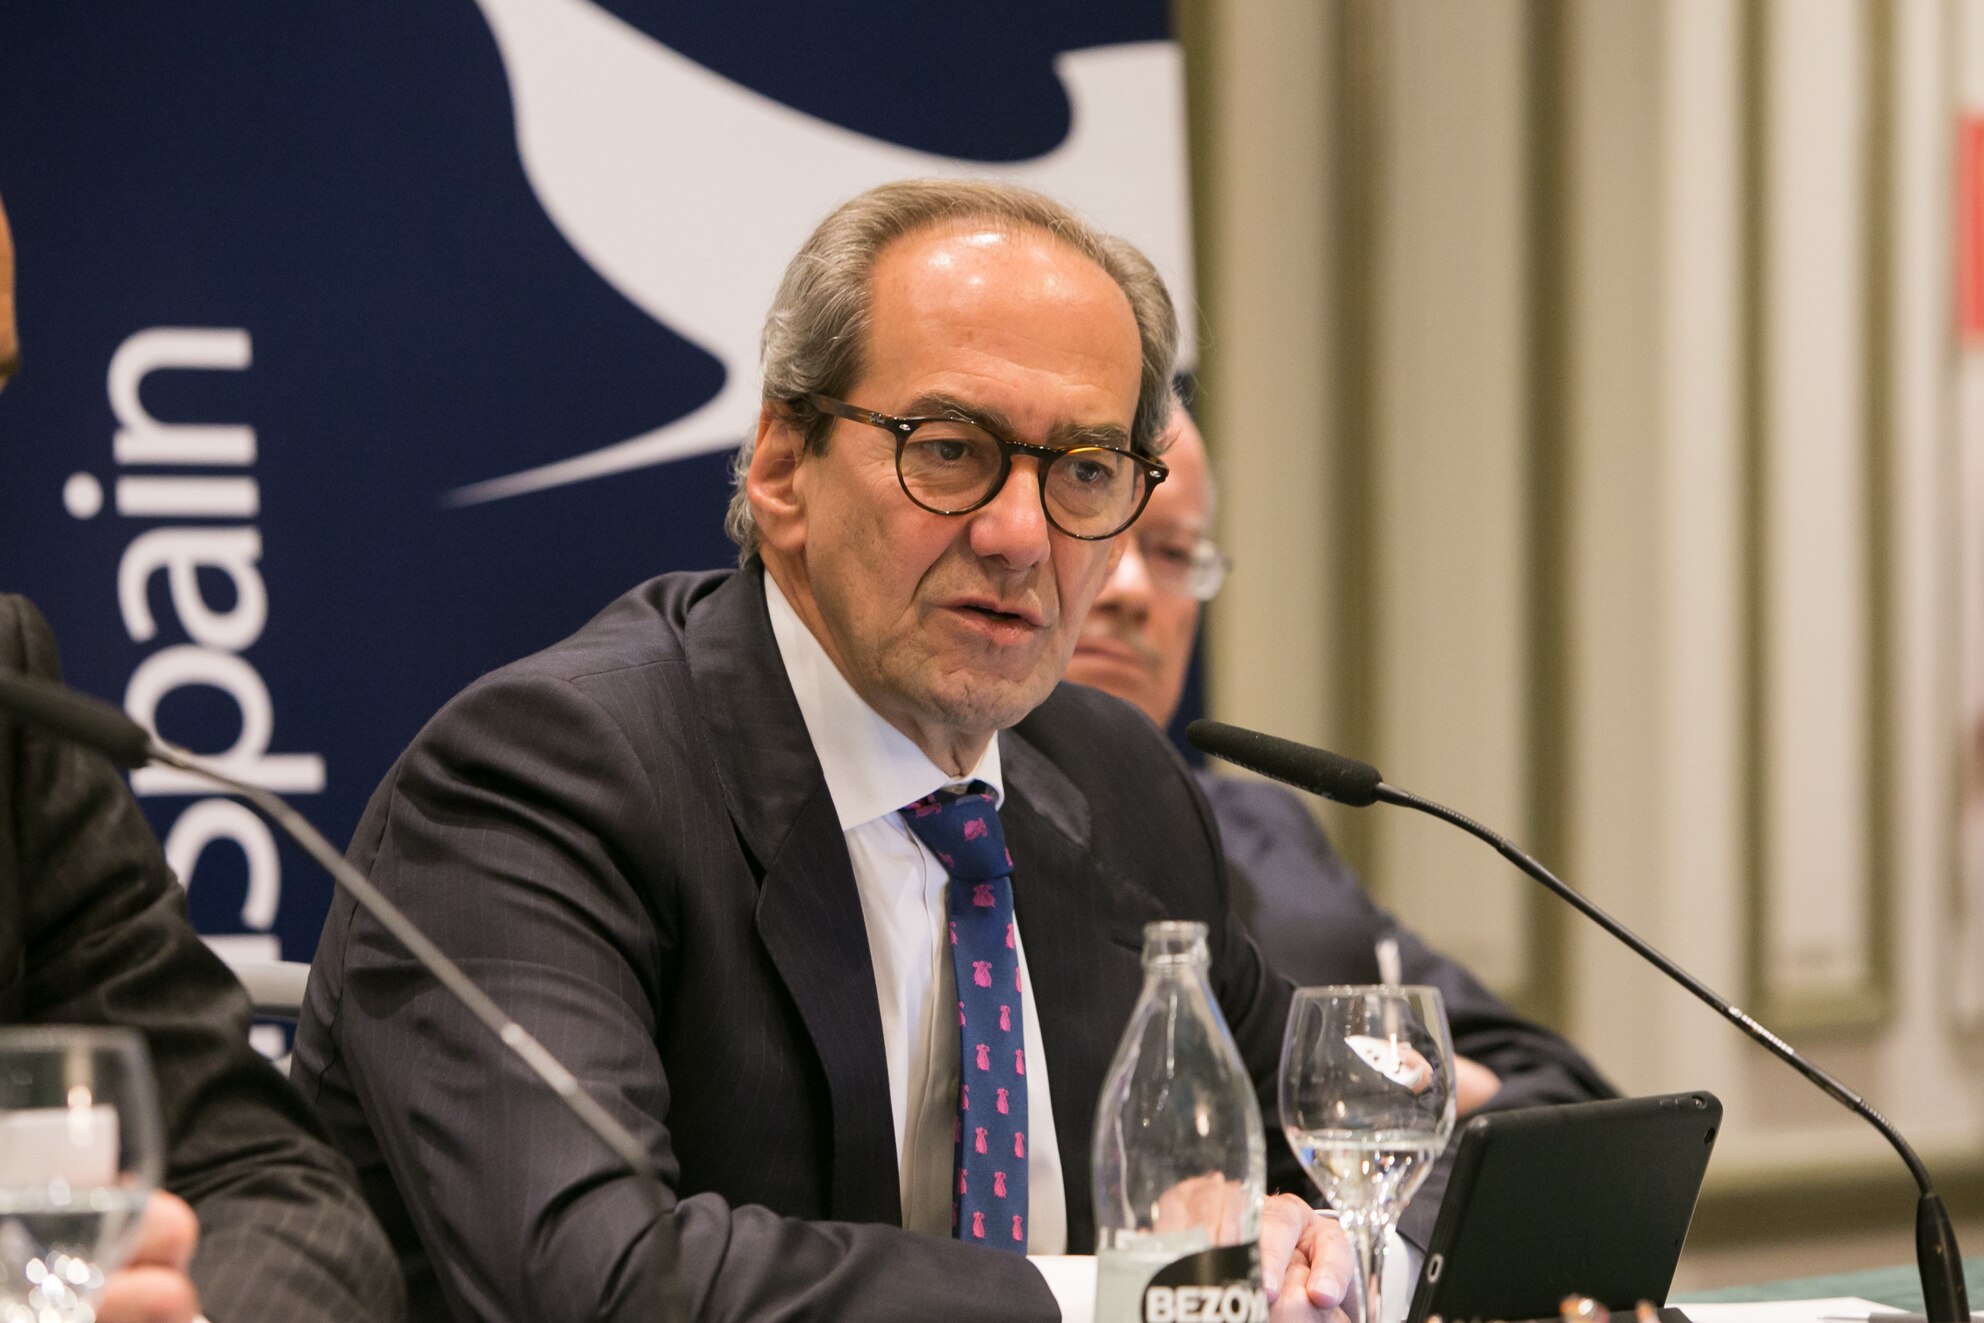 José Manuel González-Páramo durante su intervención en la mesa redonda sobre el TTIP organizada por la Cámara de Comercio de EE.UU. en España